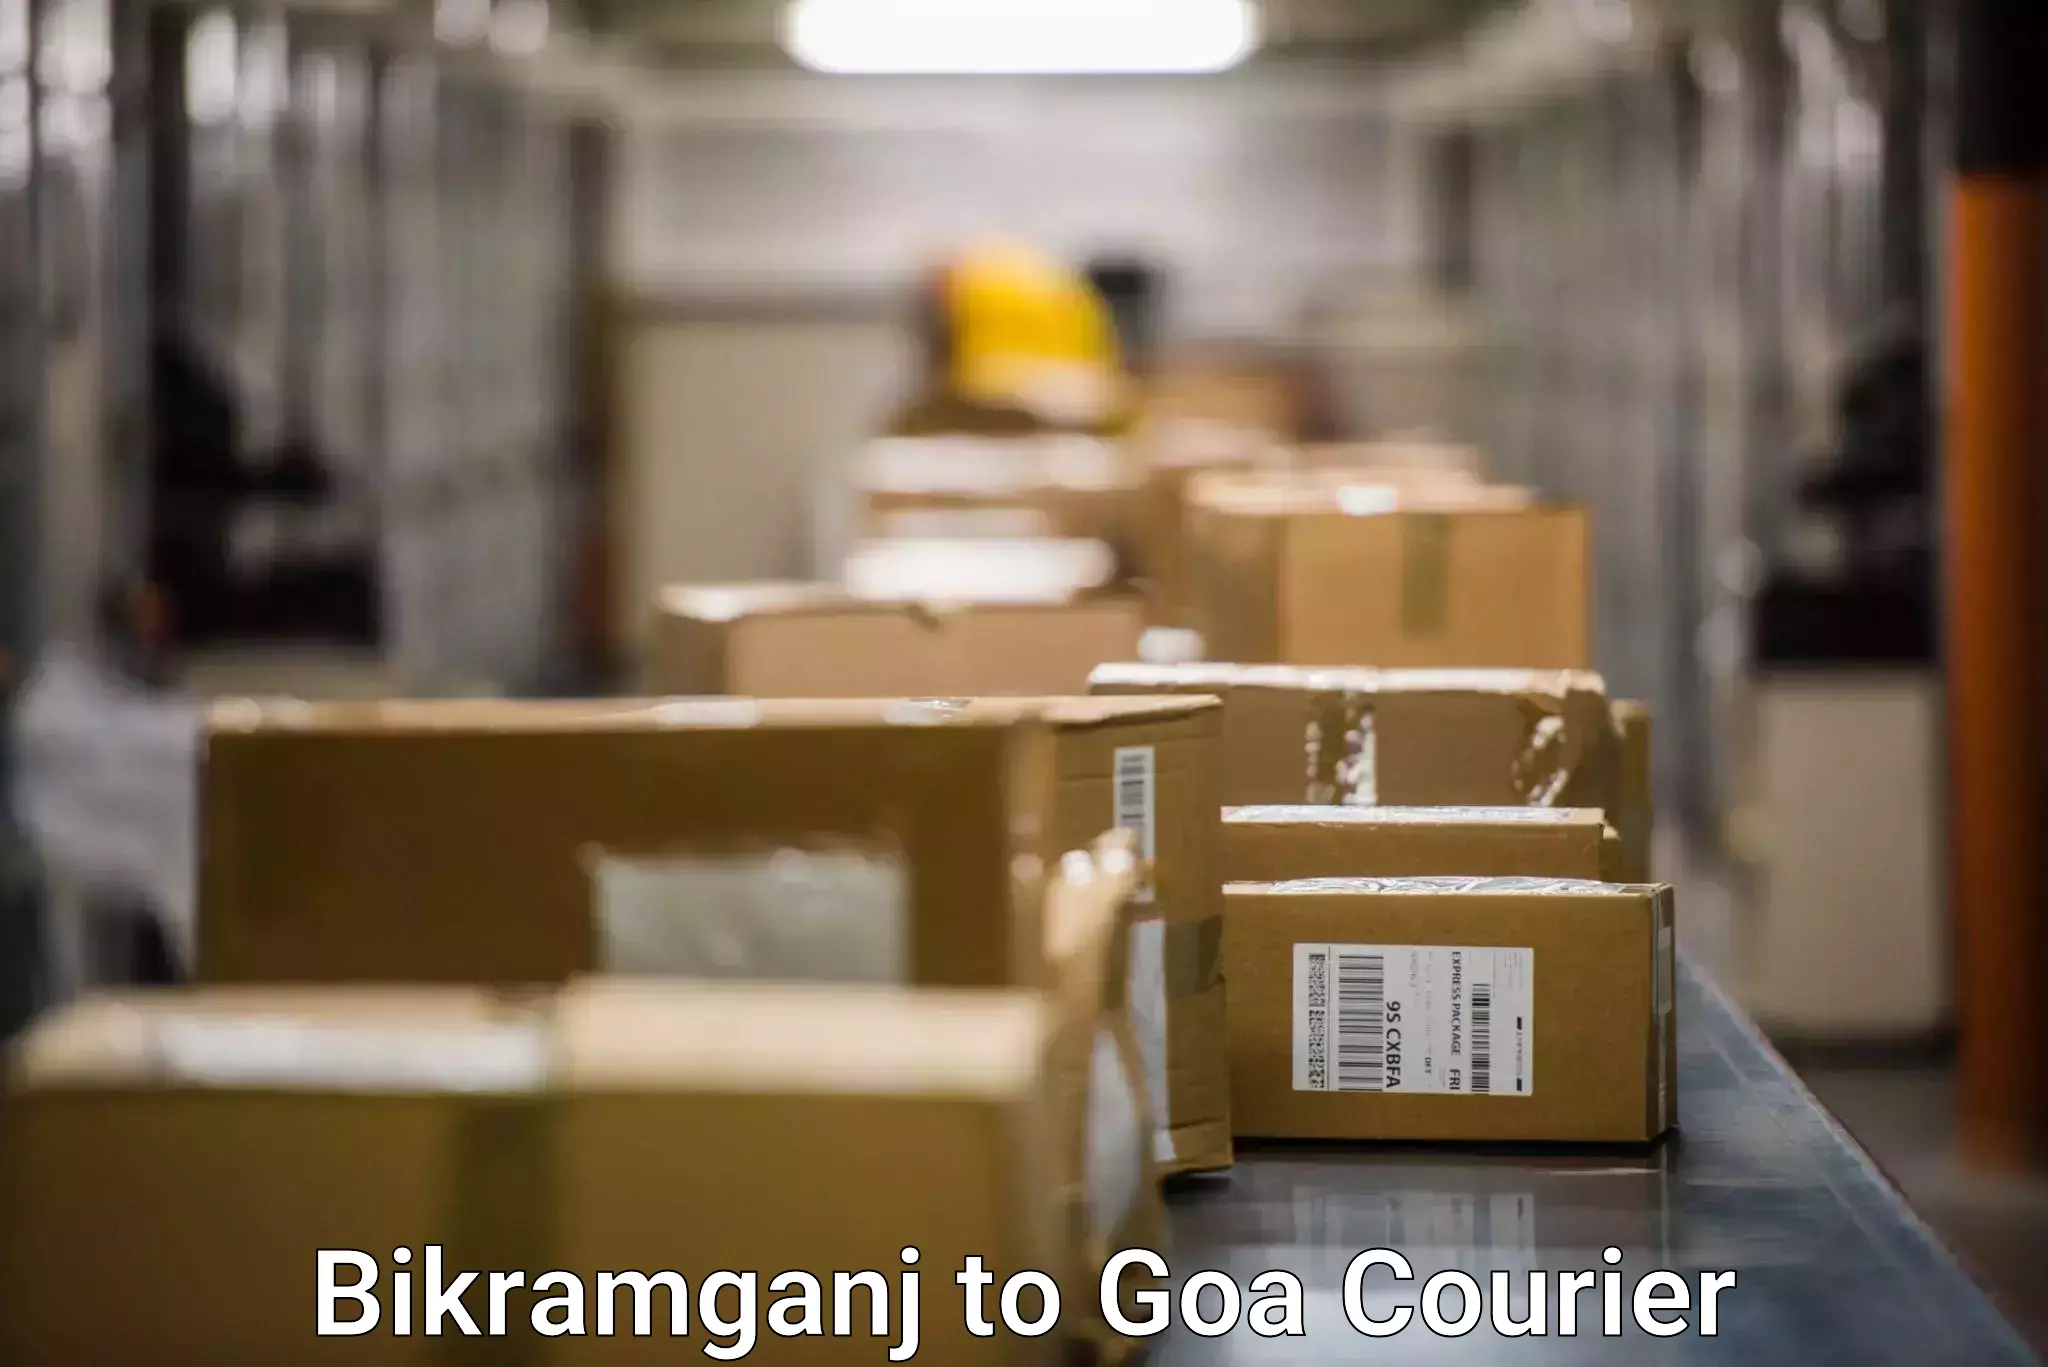 Weekend courier service in Bikramganj to IIT Goa